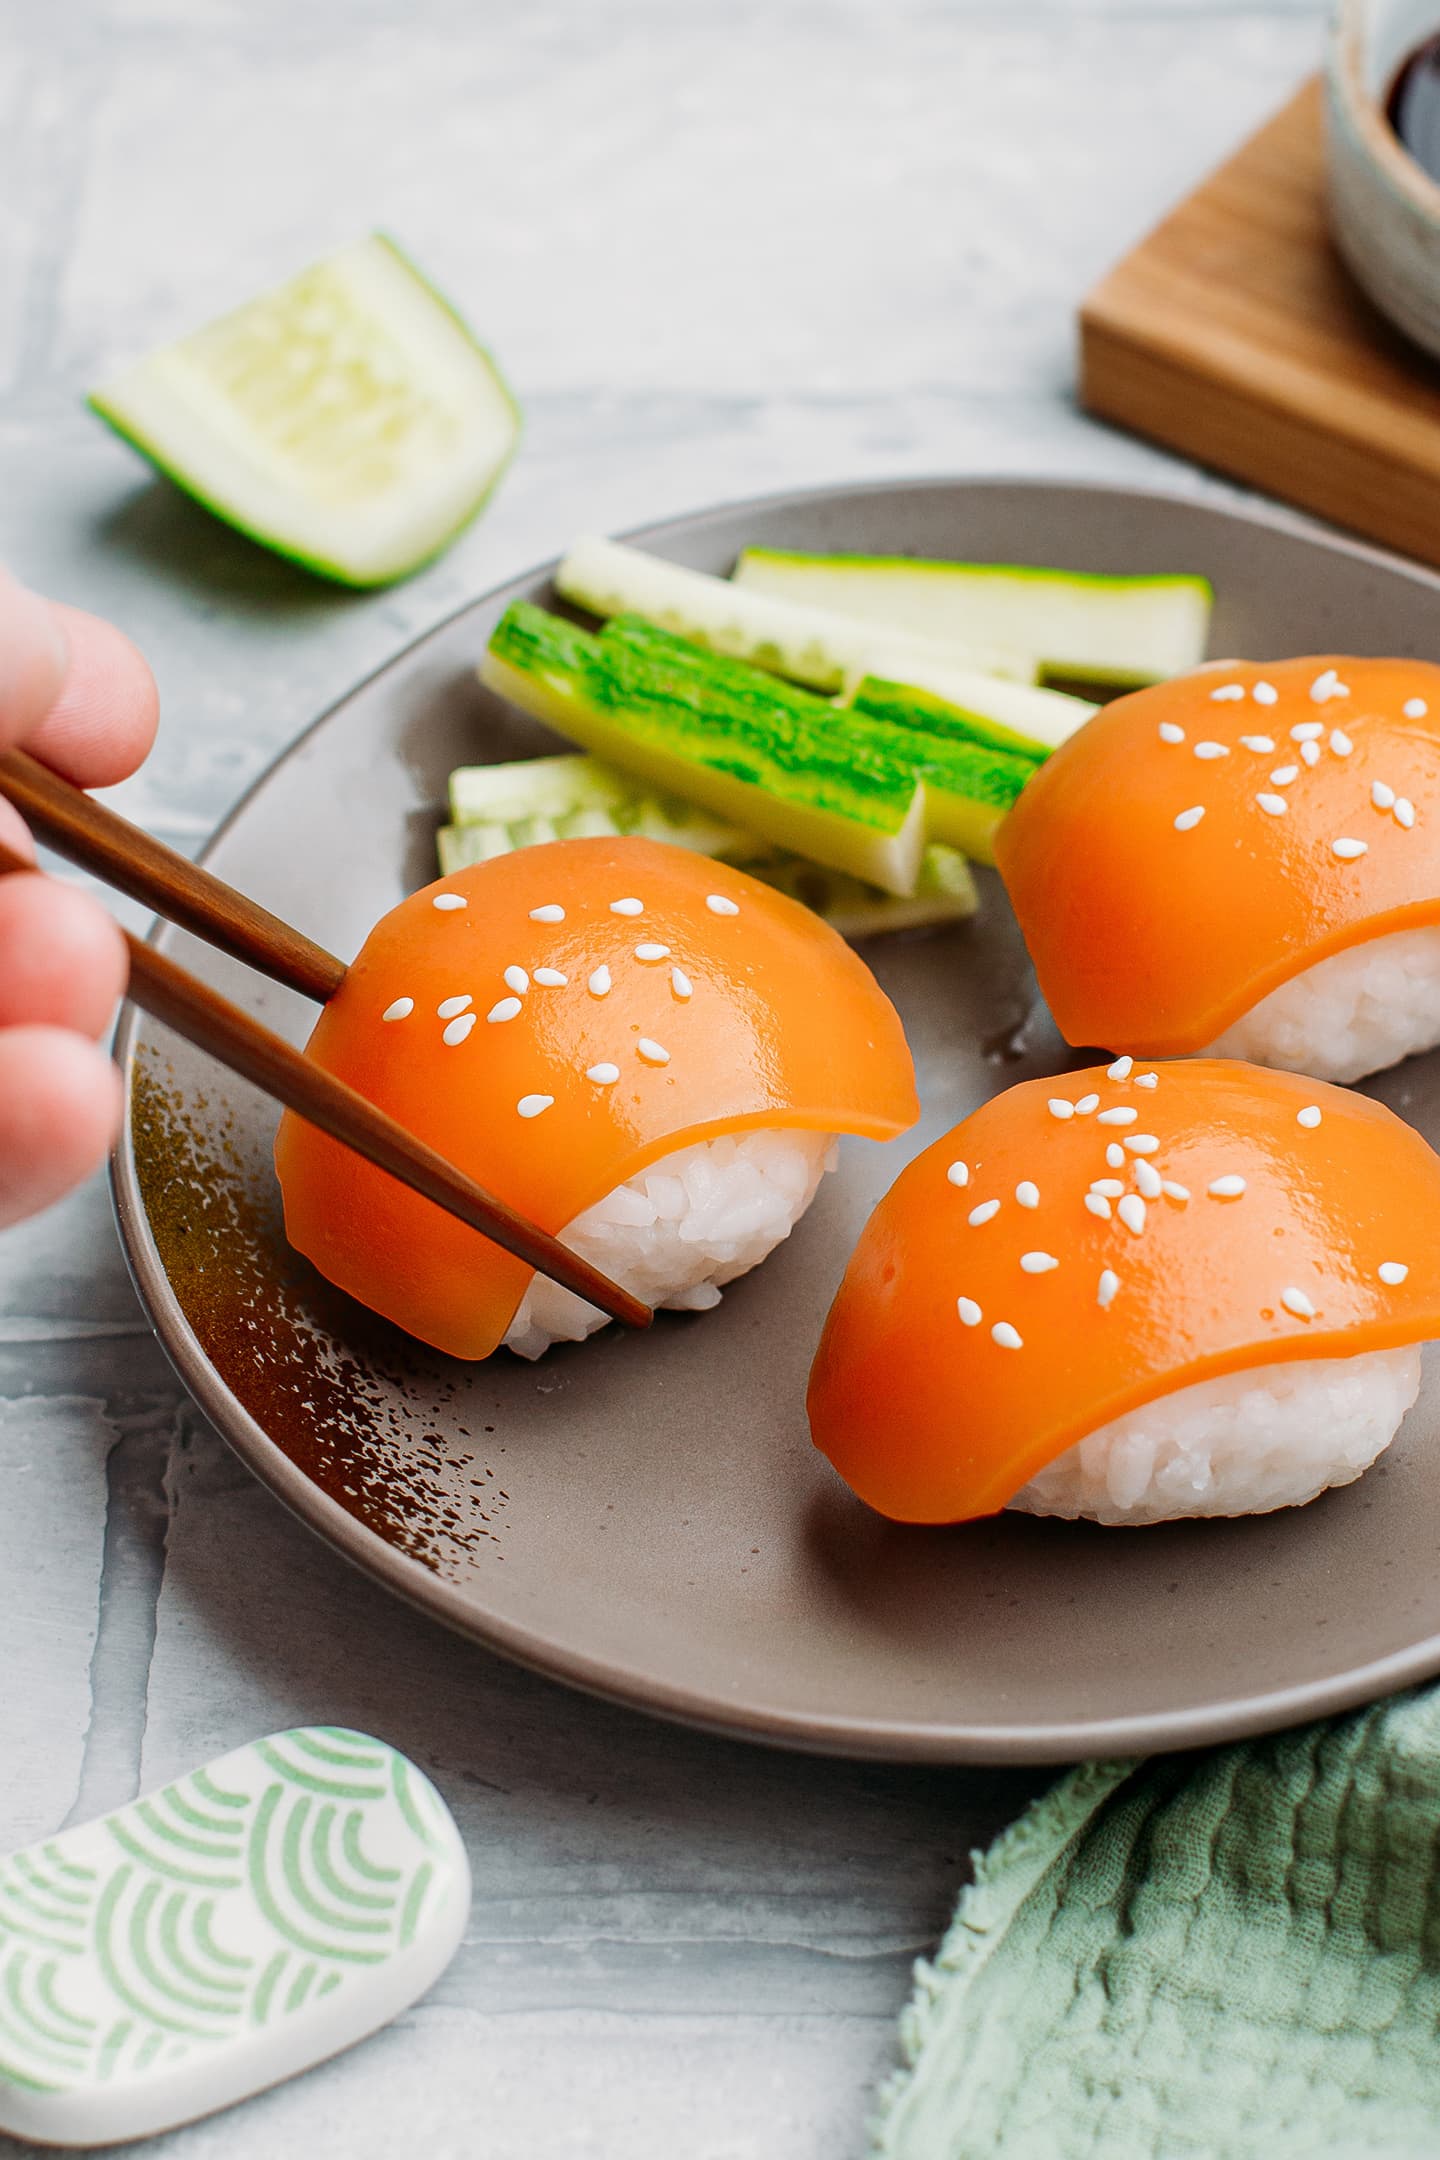 Vegan Salmon Sashimi